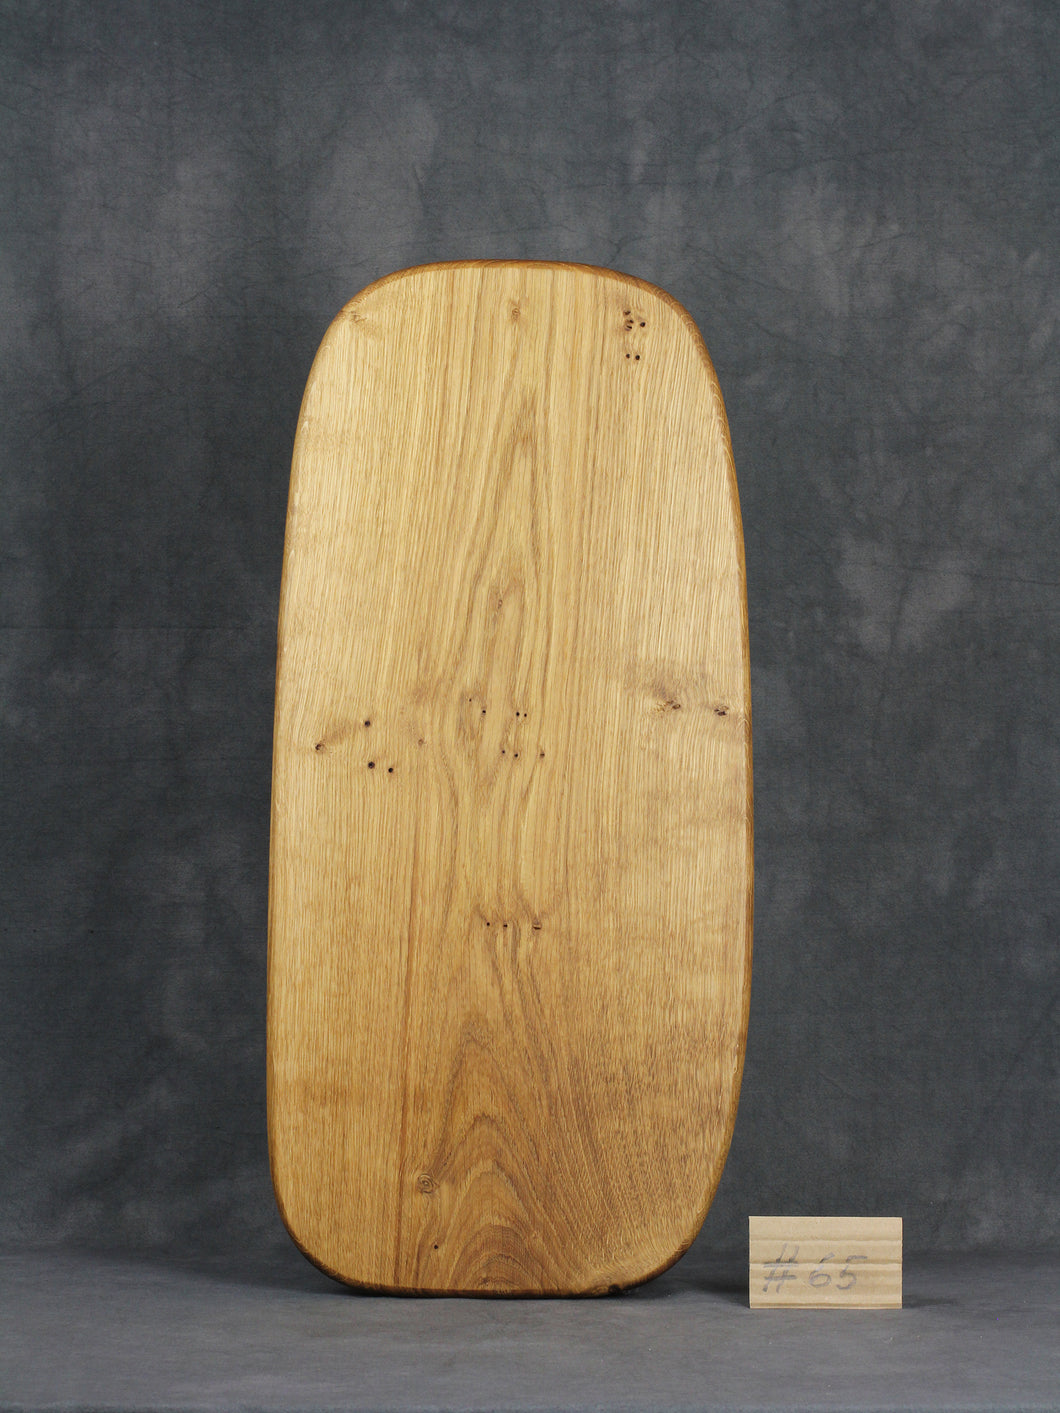 Brotzeitbrett, Servierbrett, Schneidebrett, Cuttingboard, Charcuterie Board. No. 65 - ca. 60 cm. Aus einem Stück Eiche - handgefertigt.